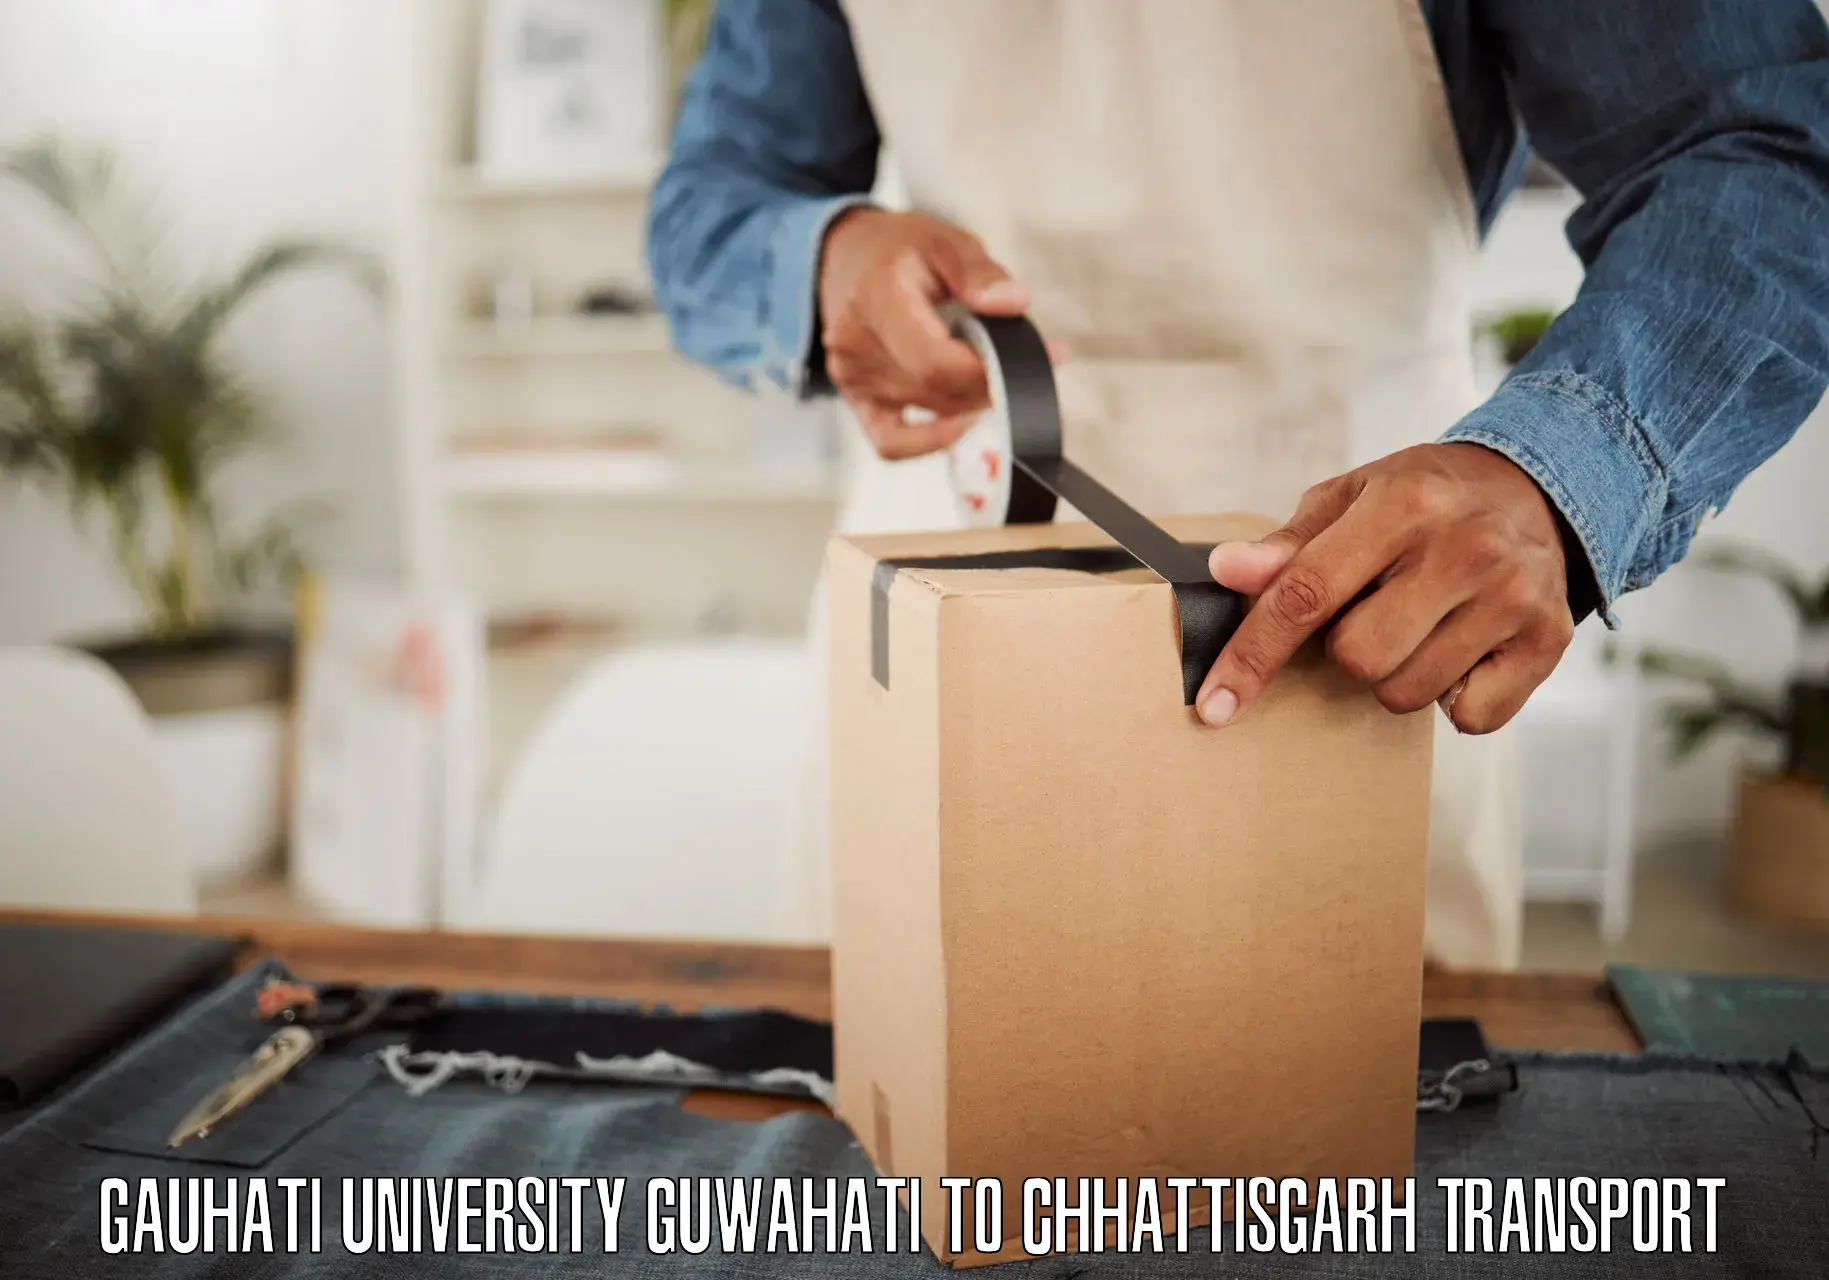 Transport in sharing Gauhati University Guwahati to Patna Chhattisgarh